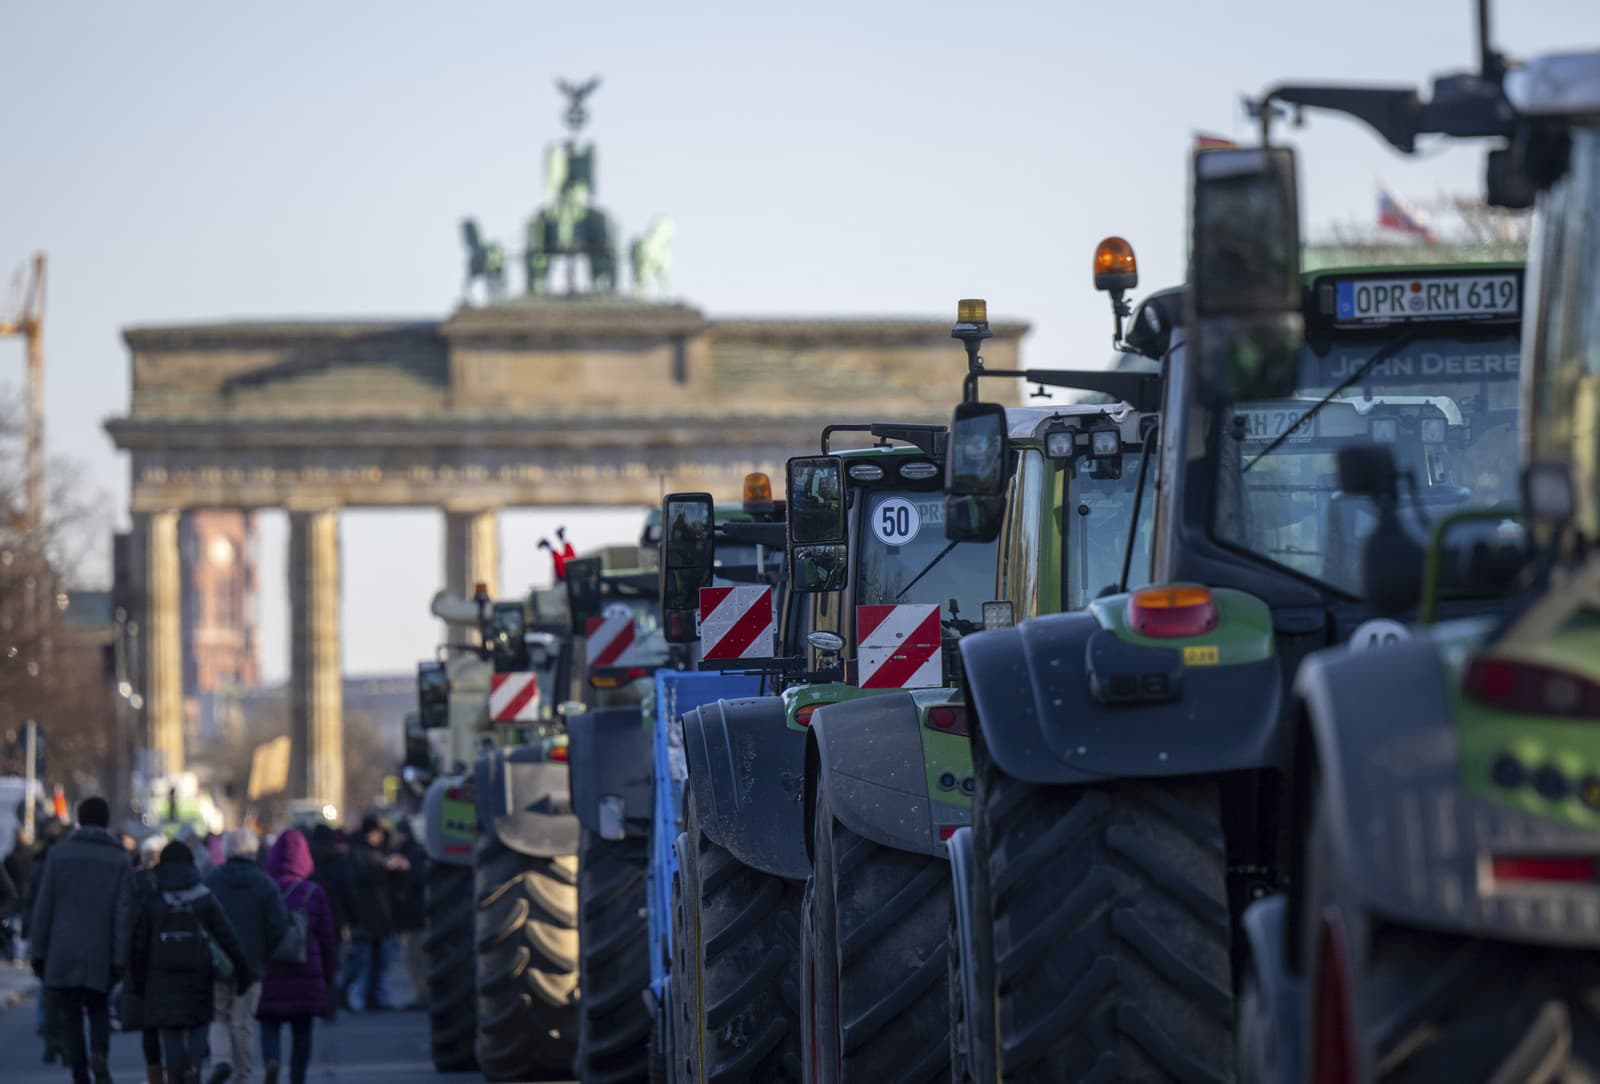 Protesty poľnohospodárov v Nemecku